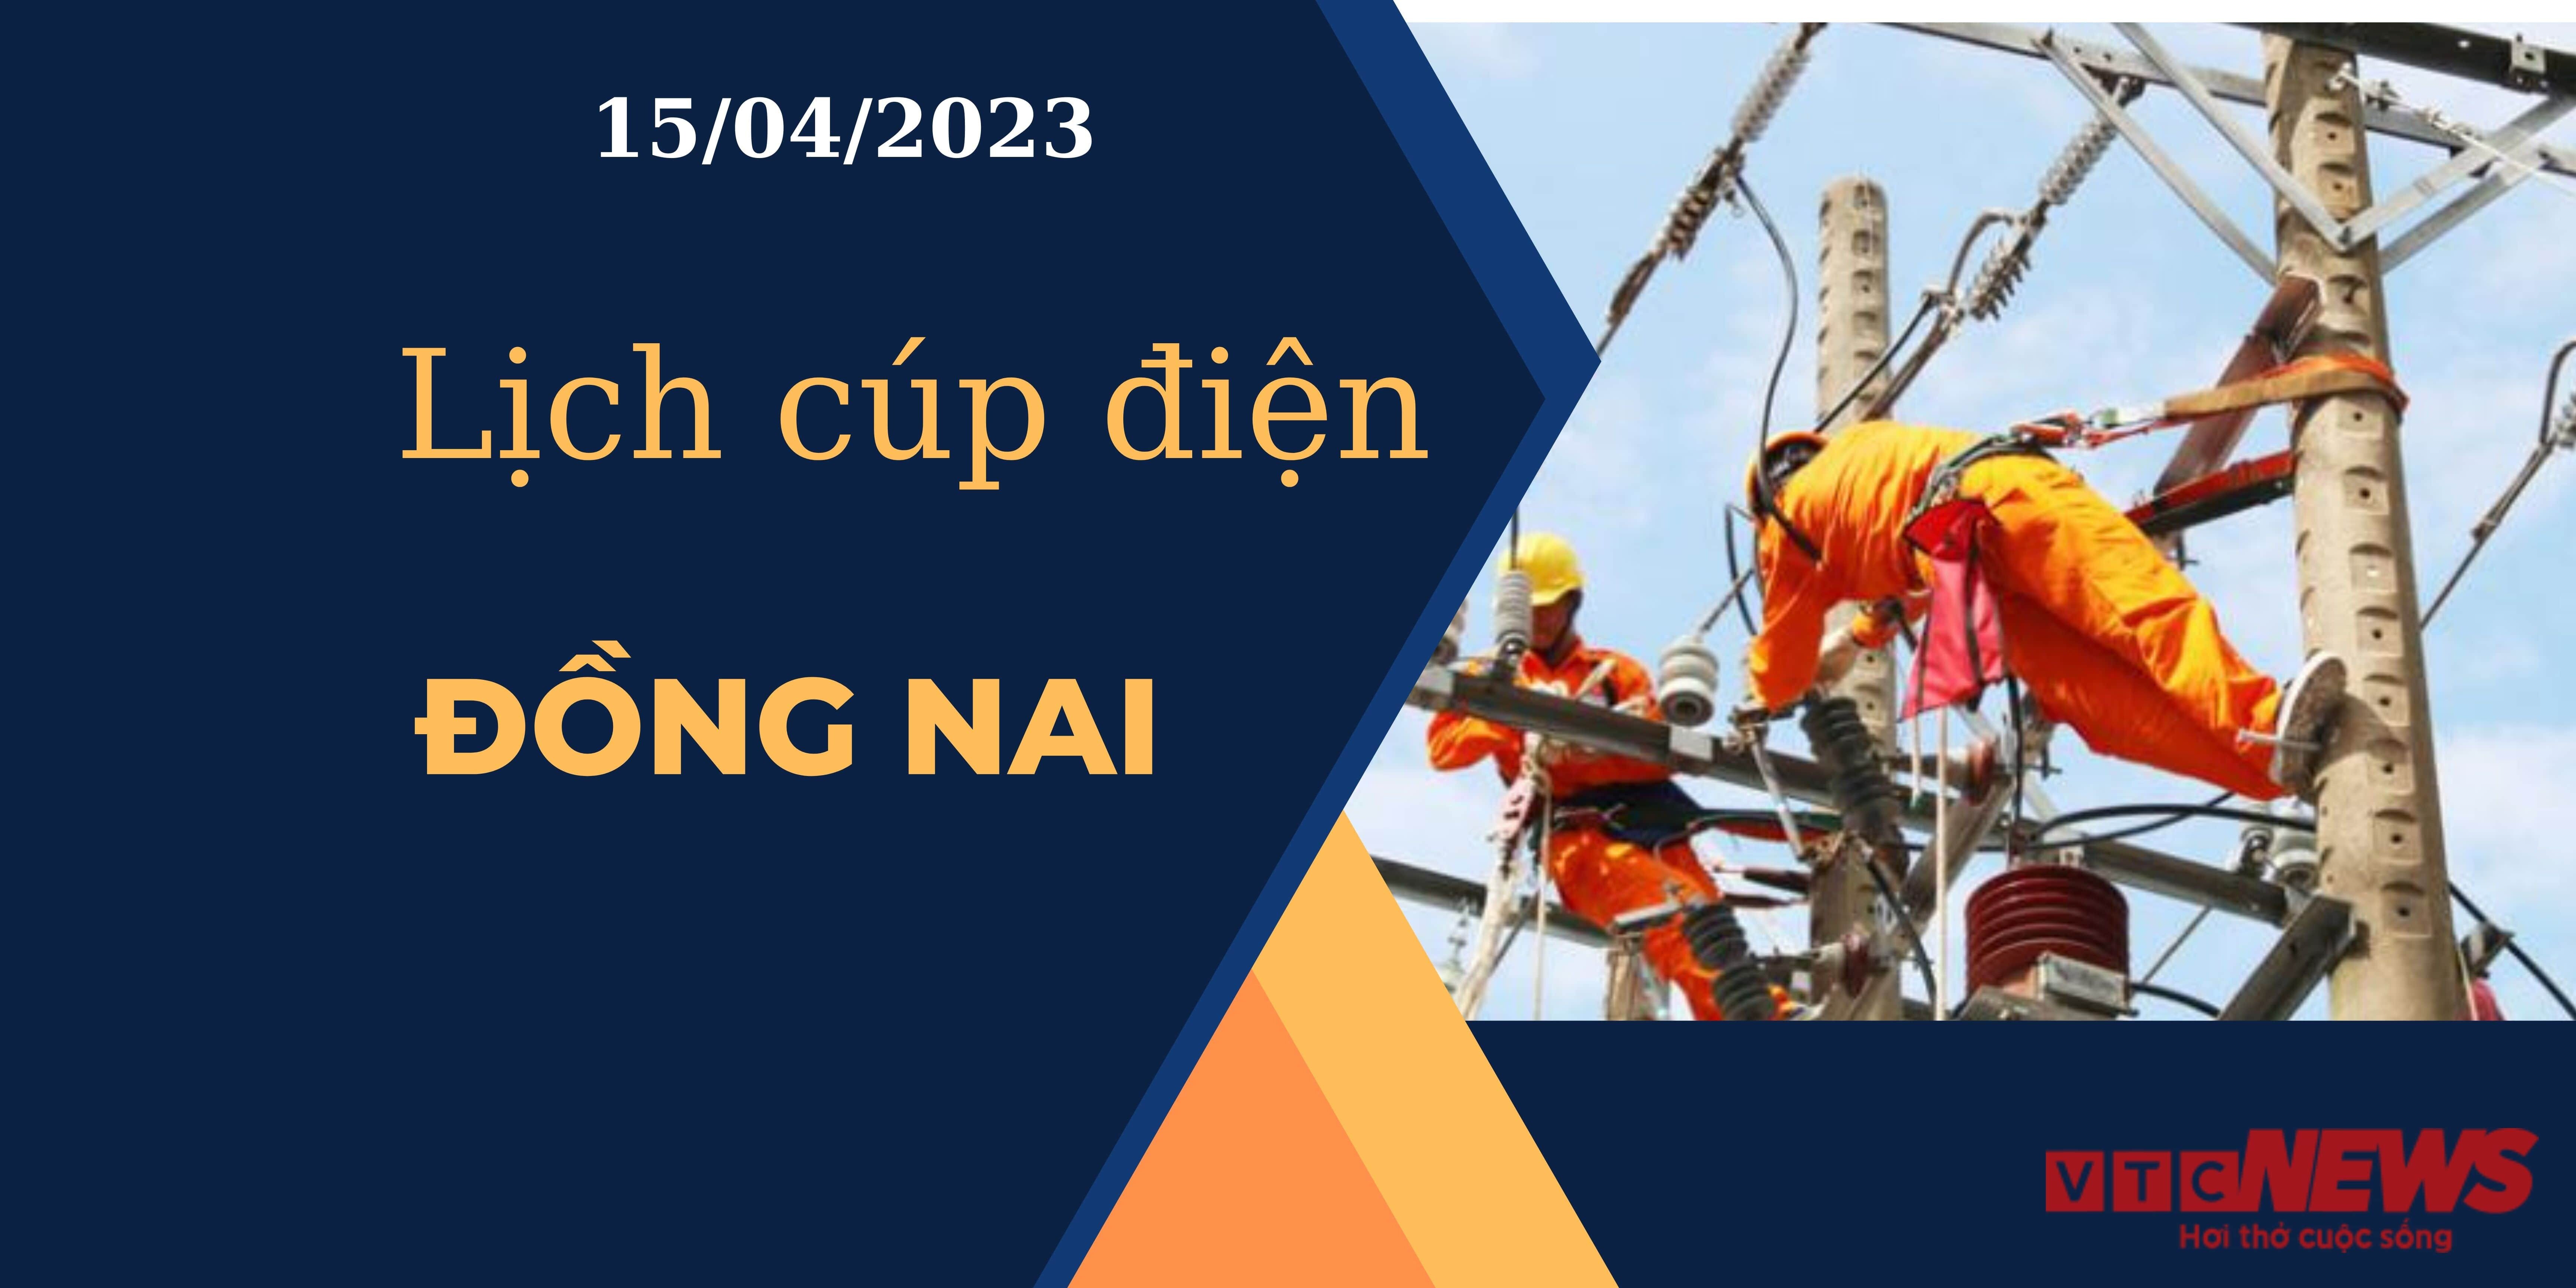 Lịch cúp điện hôm nay ngày 15/04/2023 tại Đồng Nai - 1